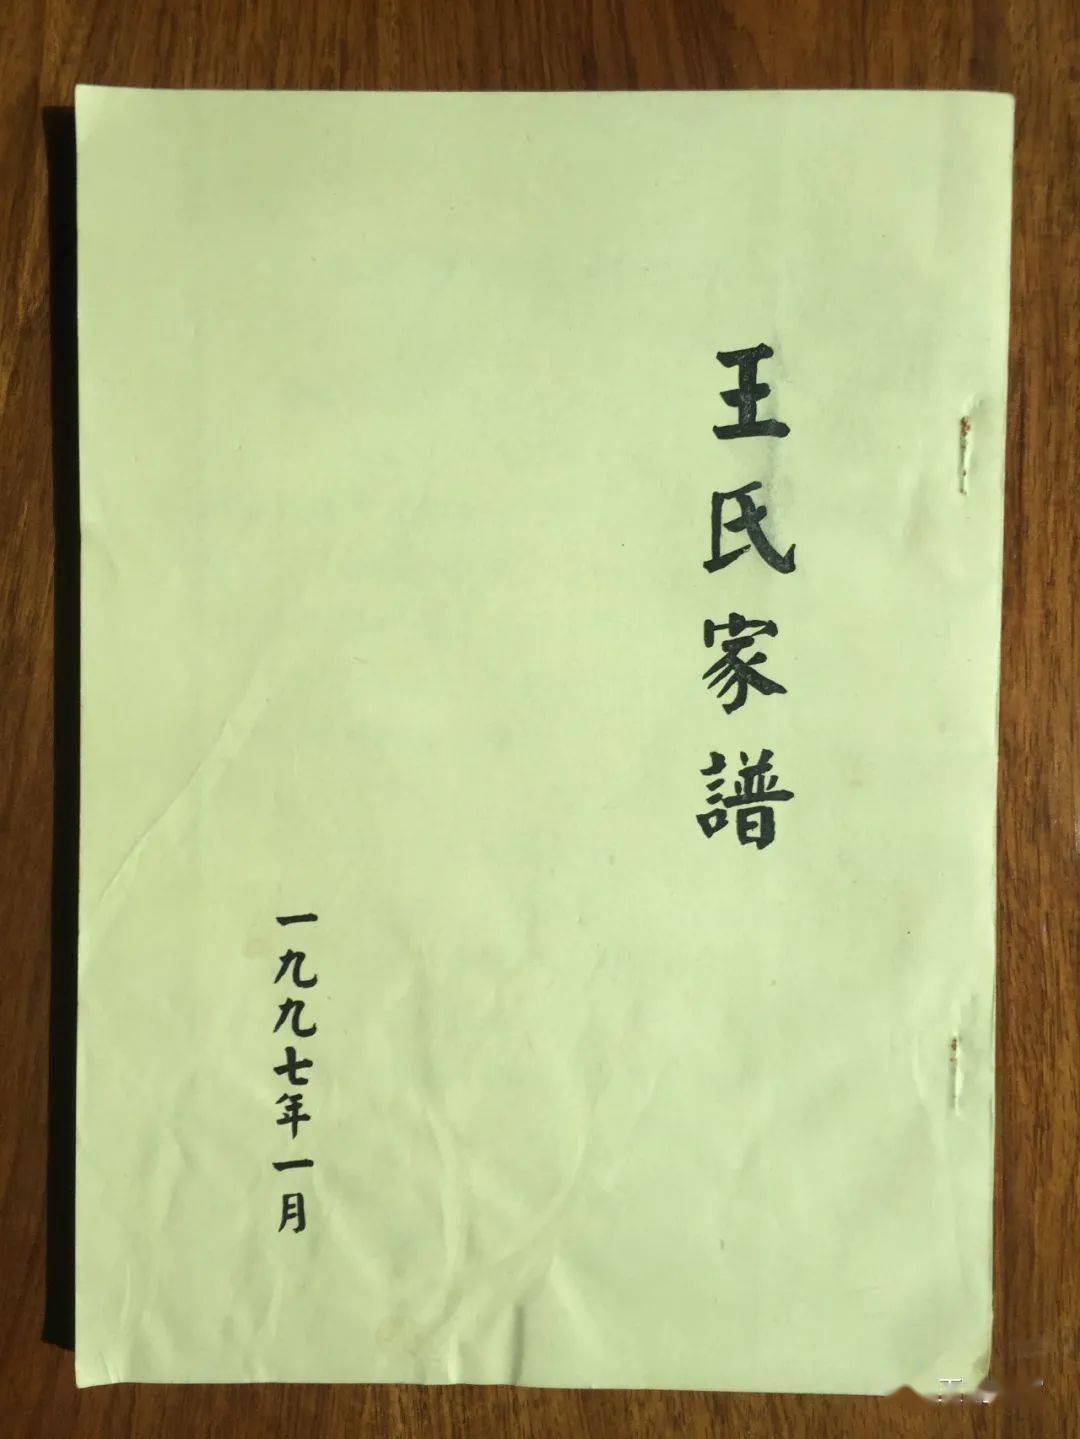 十三, 由王氏宗亲捐赠的《王氏家谱续考》一本.